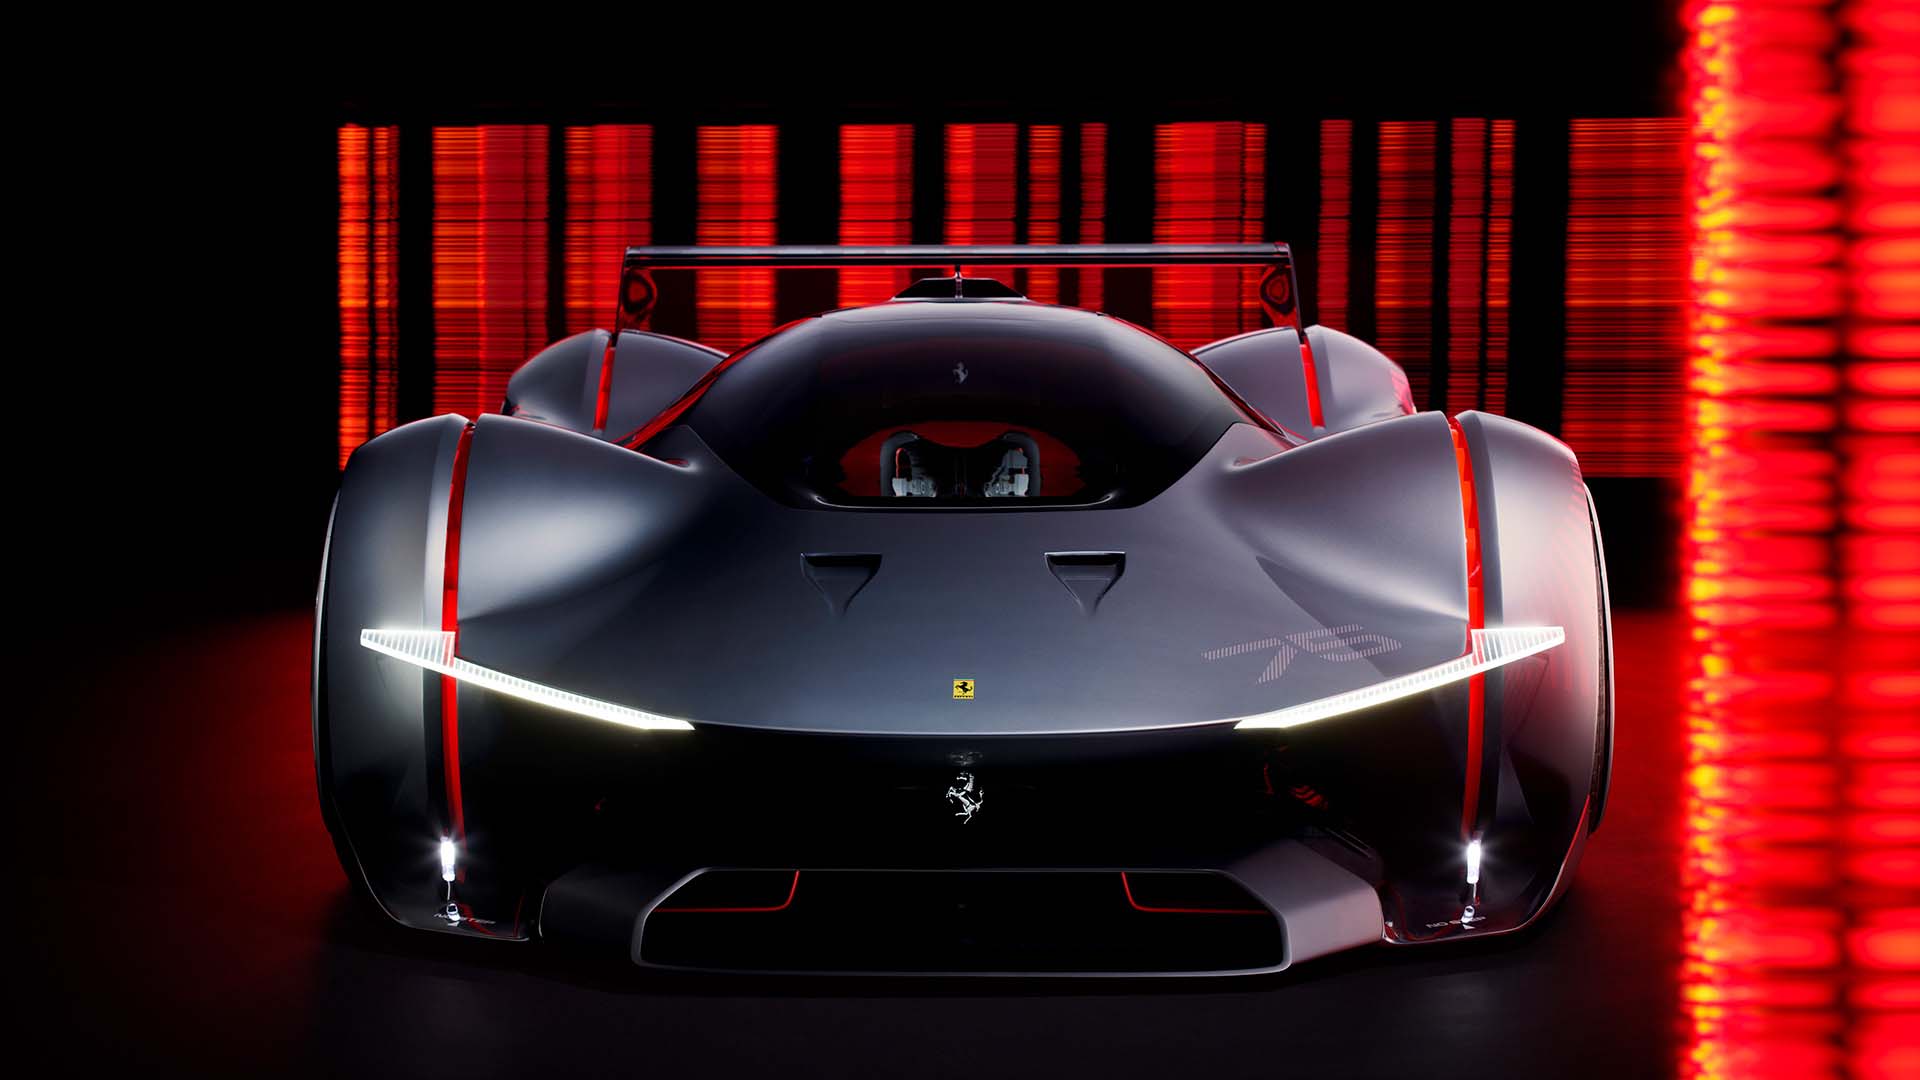 Ferrari has acquired the Vision Gran Turismo model for Gran Turismo 7